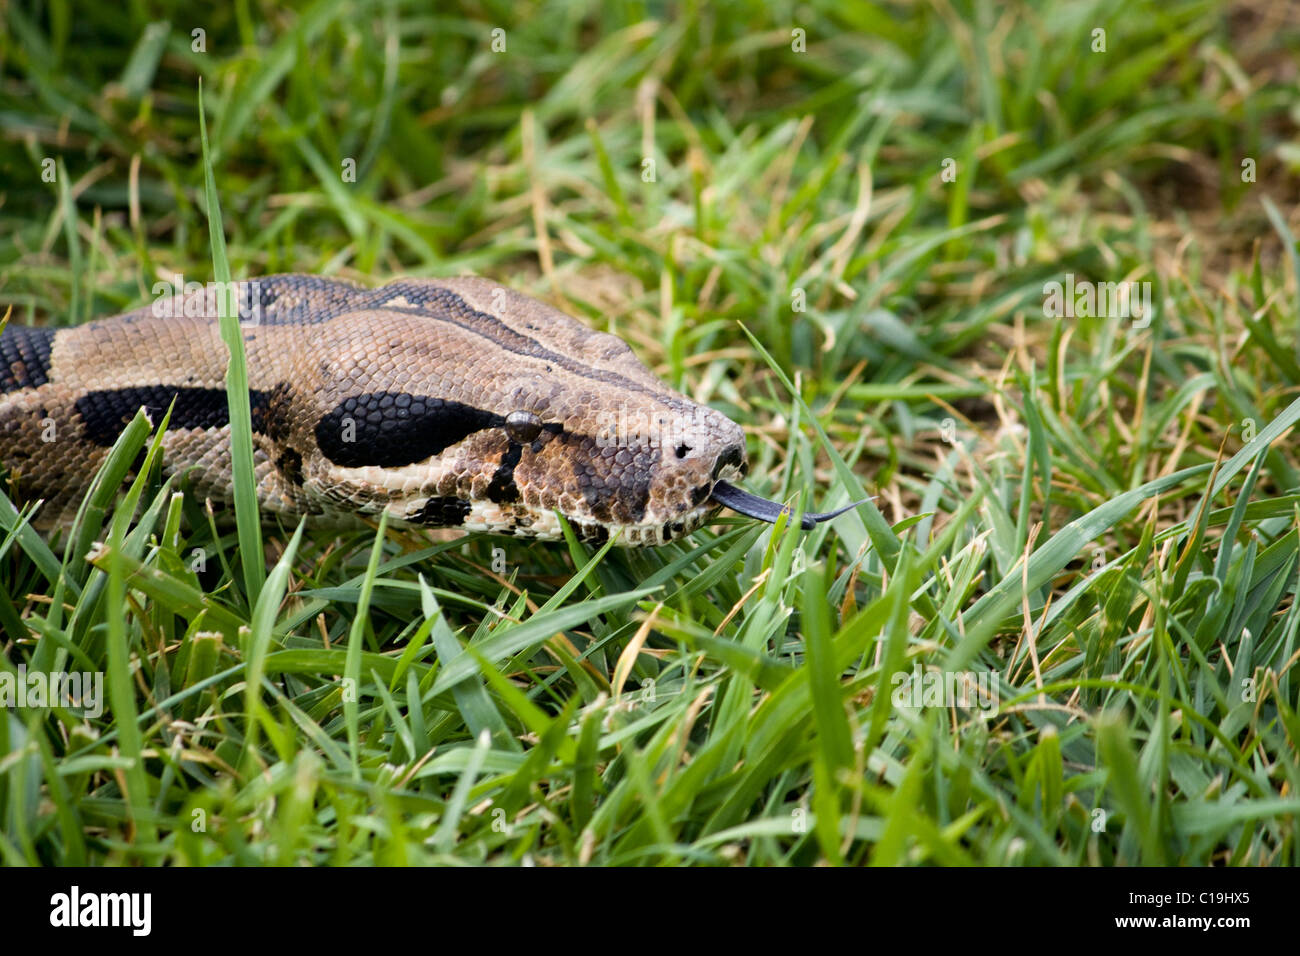 Vista de primer plano de la cabeza de la boa constrictor sobre la hierba. Foto de stock